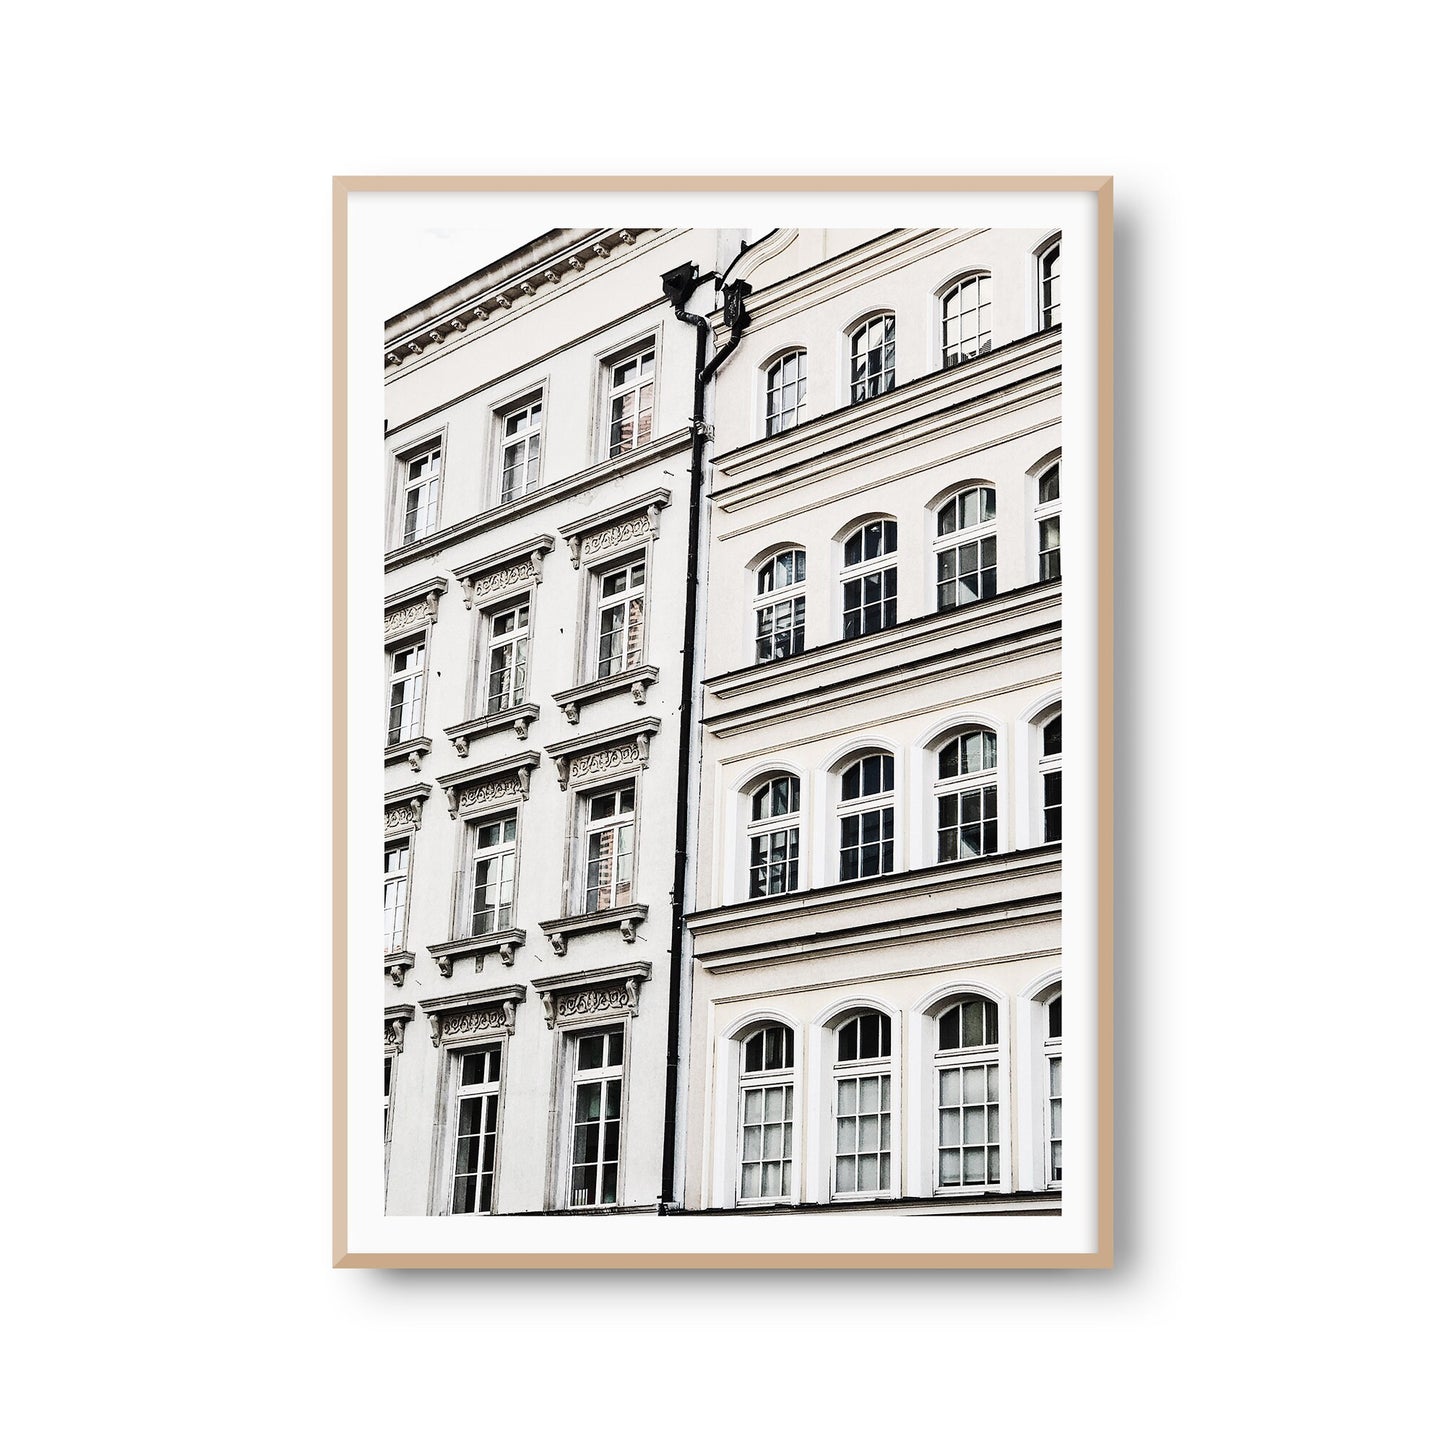 Wanddeko Poster "Häuserfront" Architektur Fotoprint Kunstdruck Bild Fotografie Print Wandbild Kunstdruck (OHNE RAHMEN)